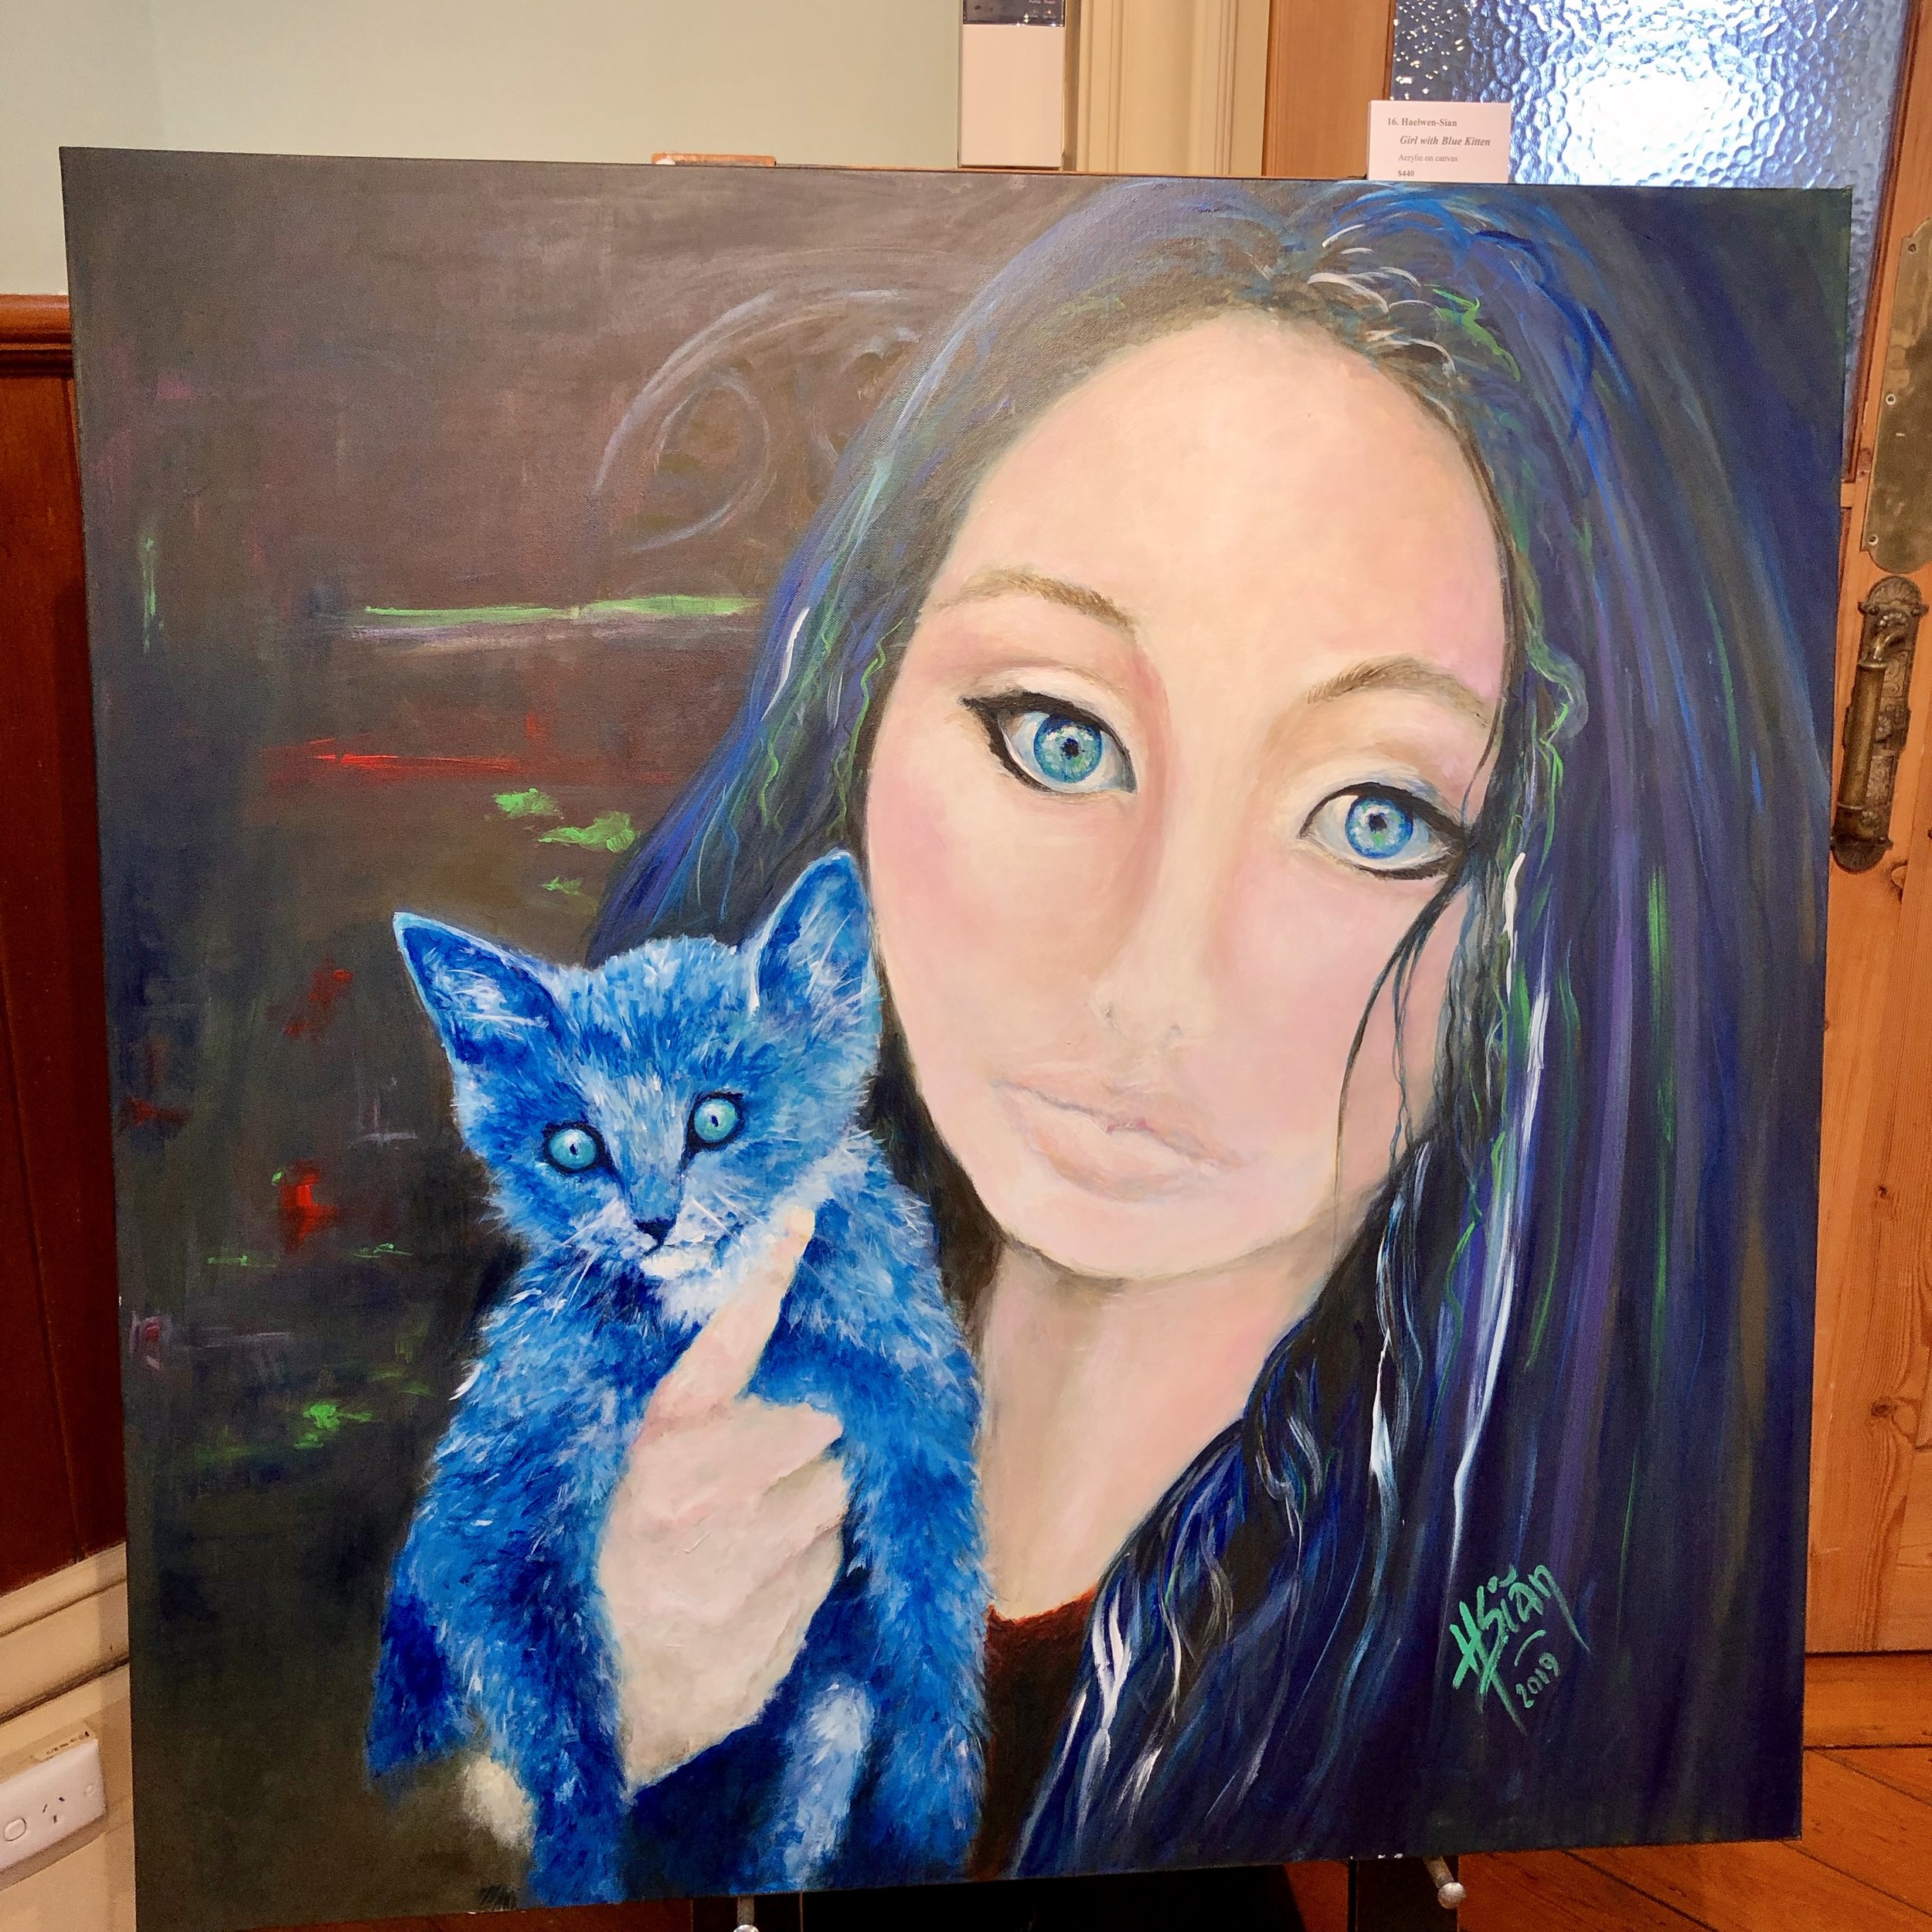 "Girl with blue kitten"